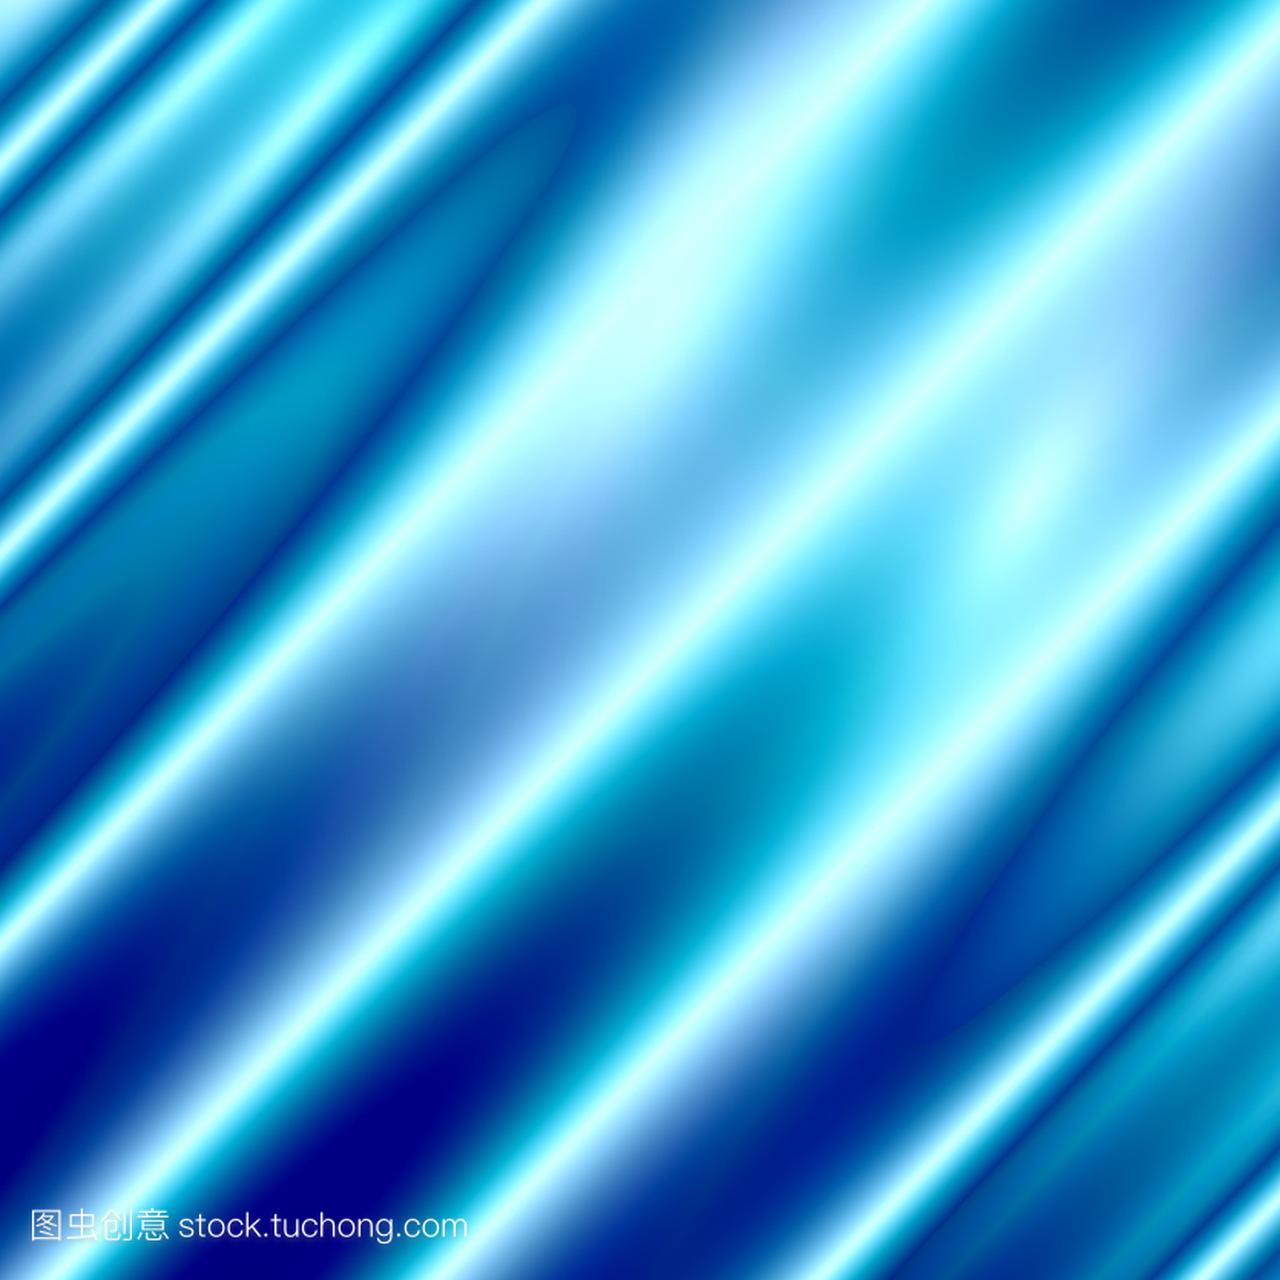 蓝色抽象背景-丝绸质地-现代插画-豪华壁纸设计